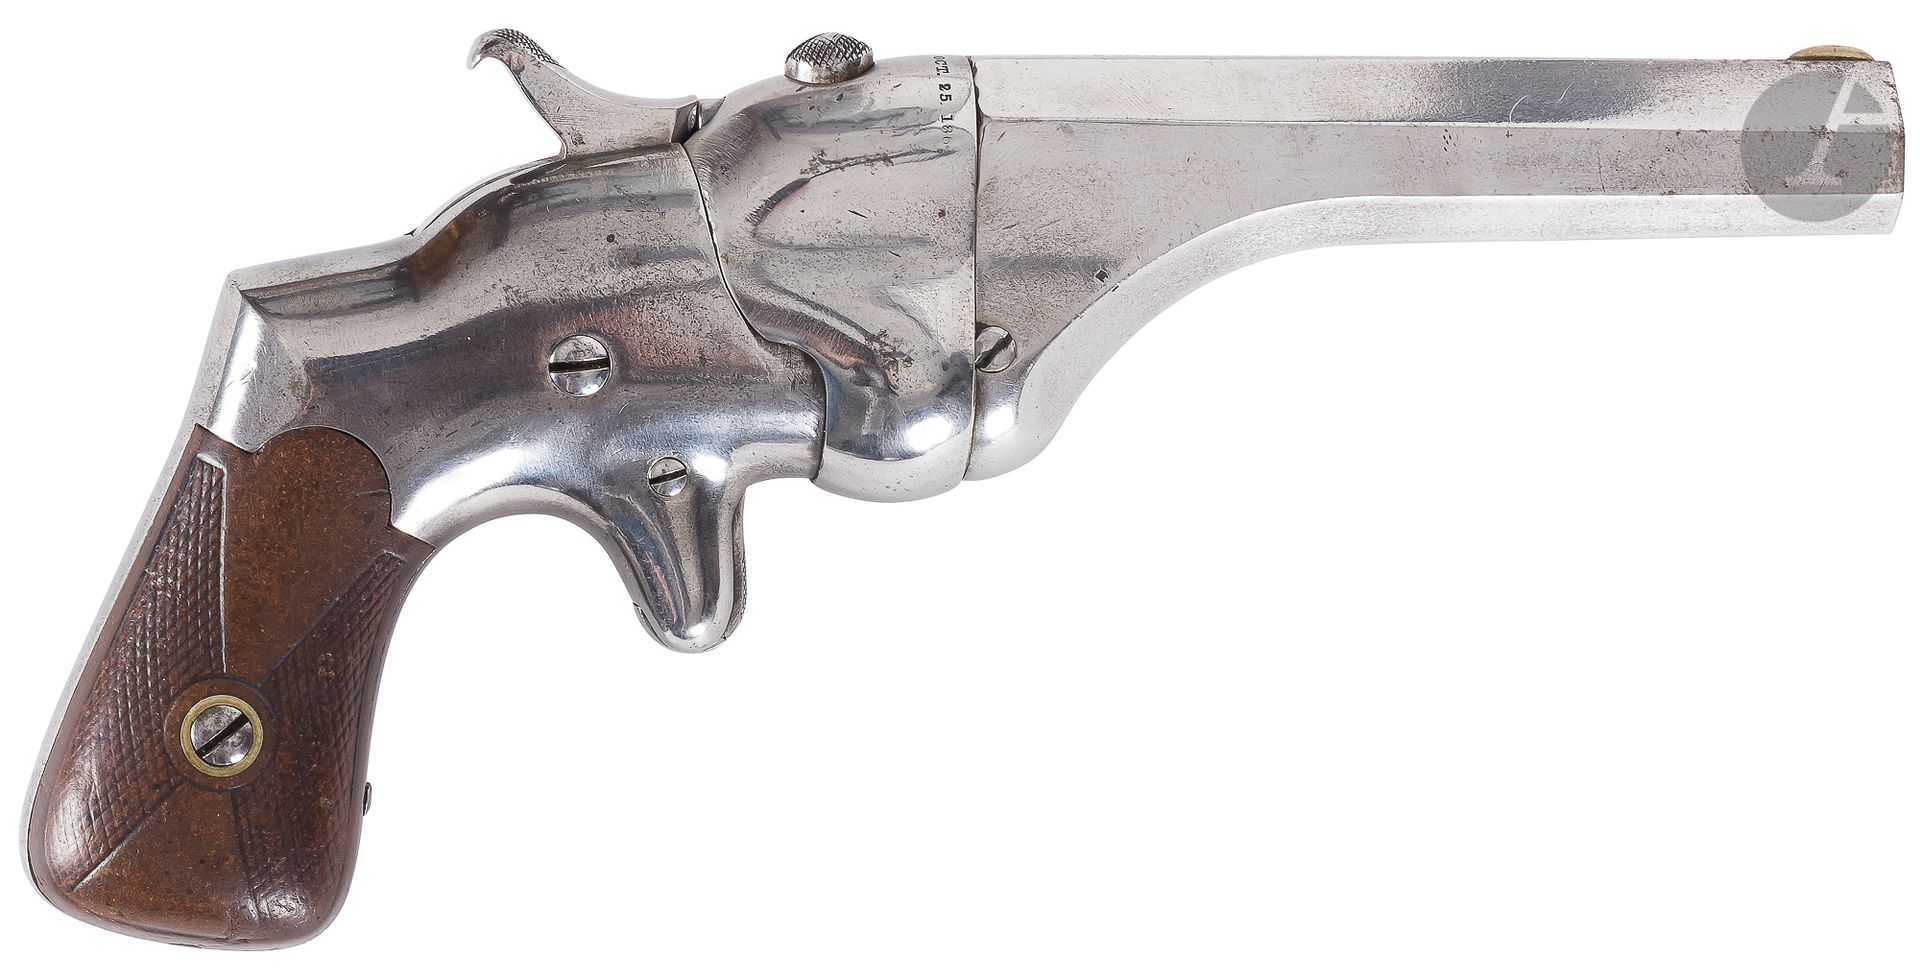 Null Connecticut Arms "Bull Dog" Ha mmond Derringer Pistole, einschüssig, 44 Hen&hellip;